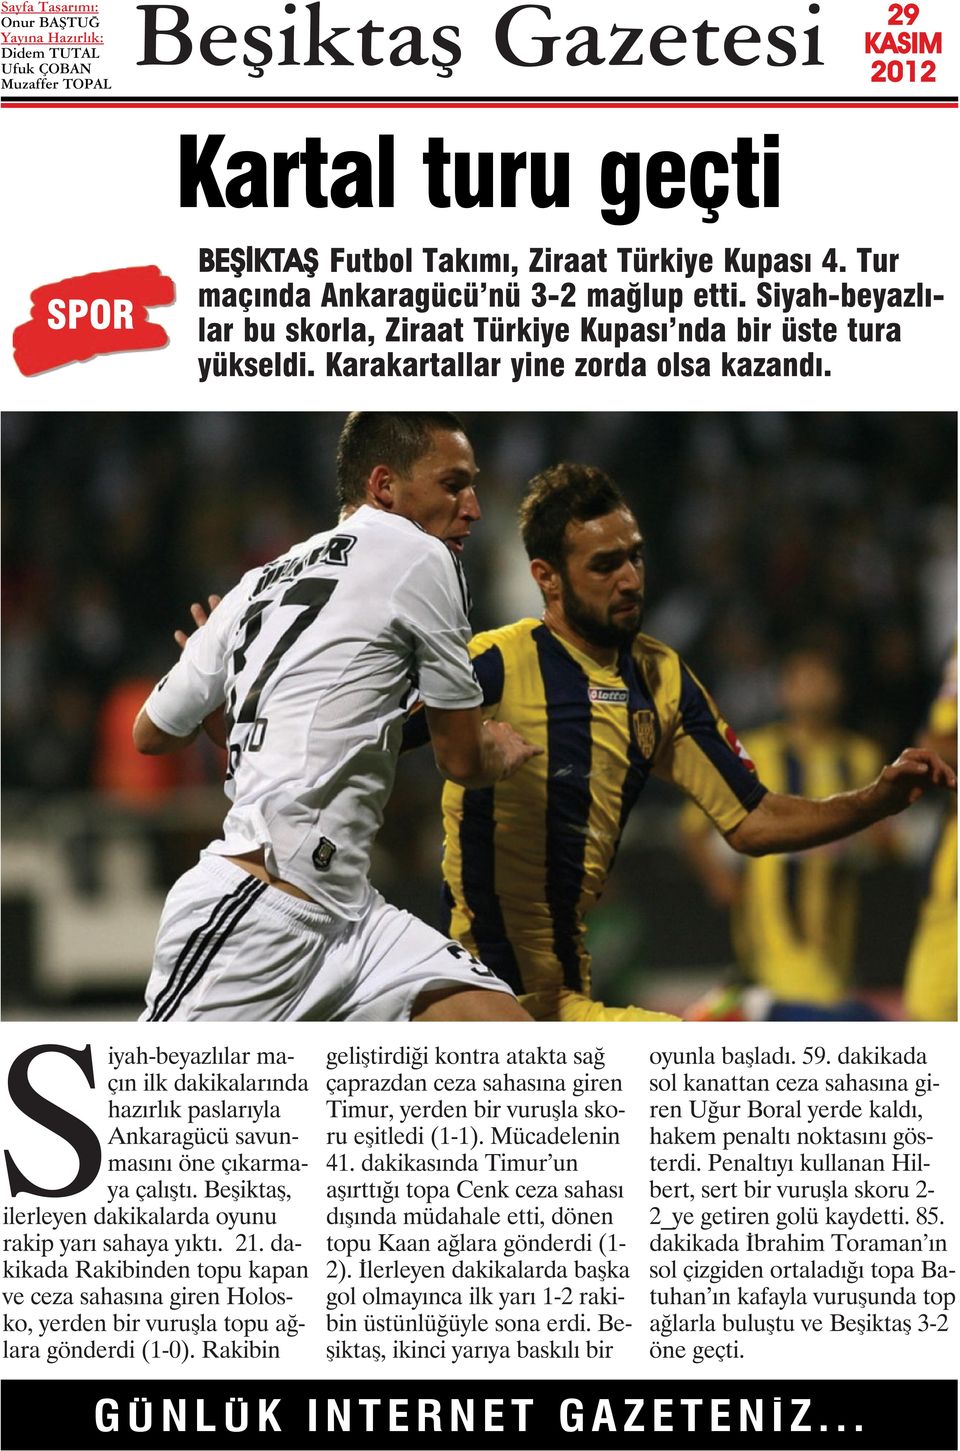 Beşiktaş, ilerleyen dakikalarda oyunu rakip yarı sahaya yıktı. 21. dakikada Rakibinden topu kapan ve ceza sahasına giren Holosko, yerden bir vuruşla topu ağlara gönderdi (1-0).